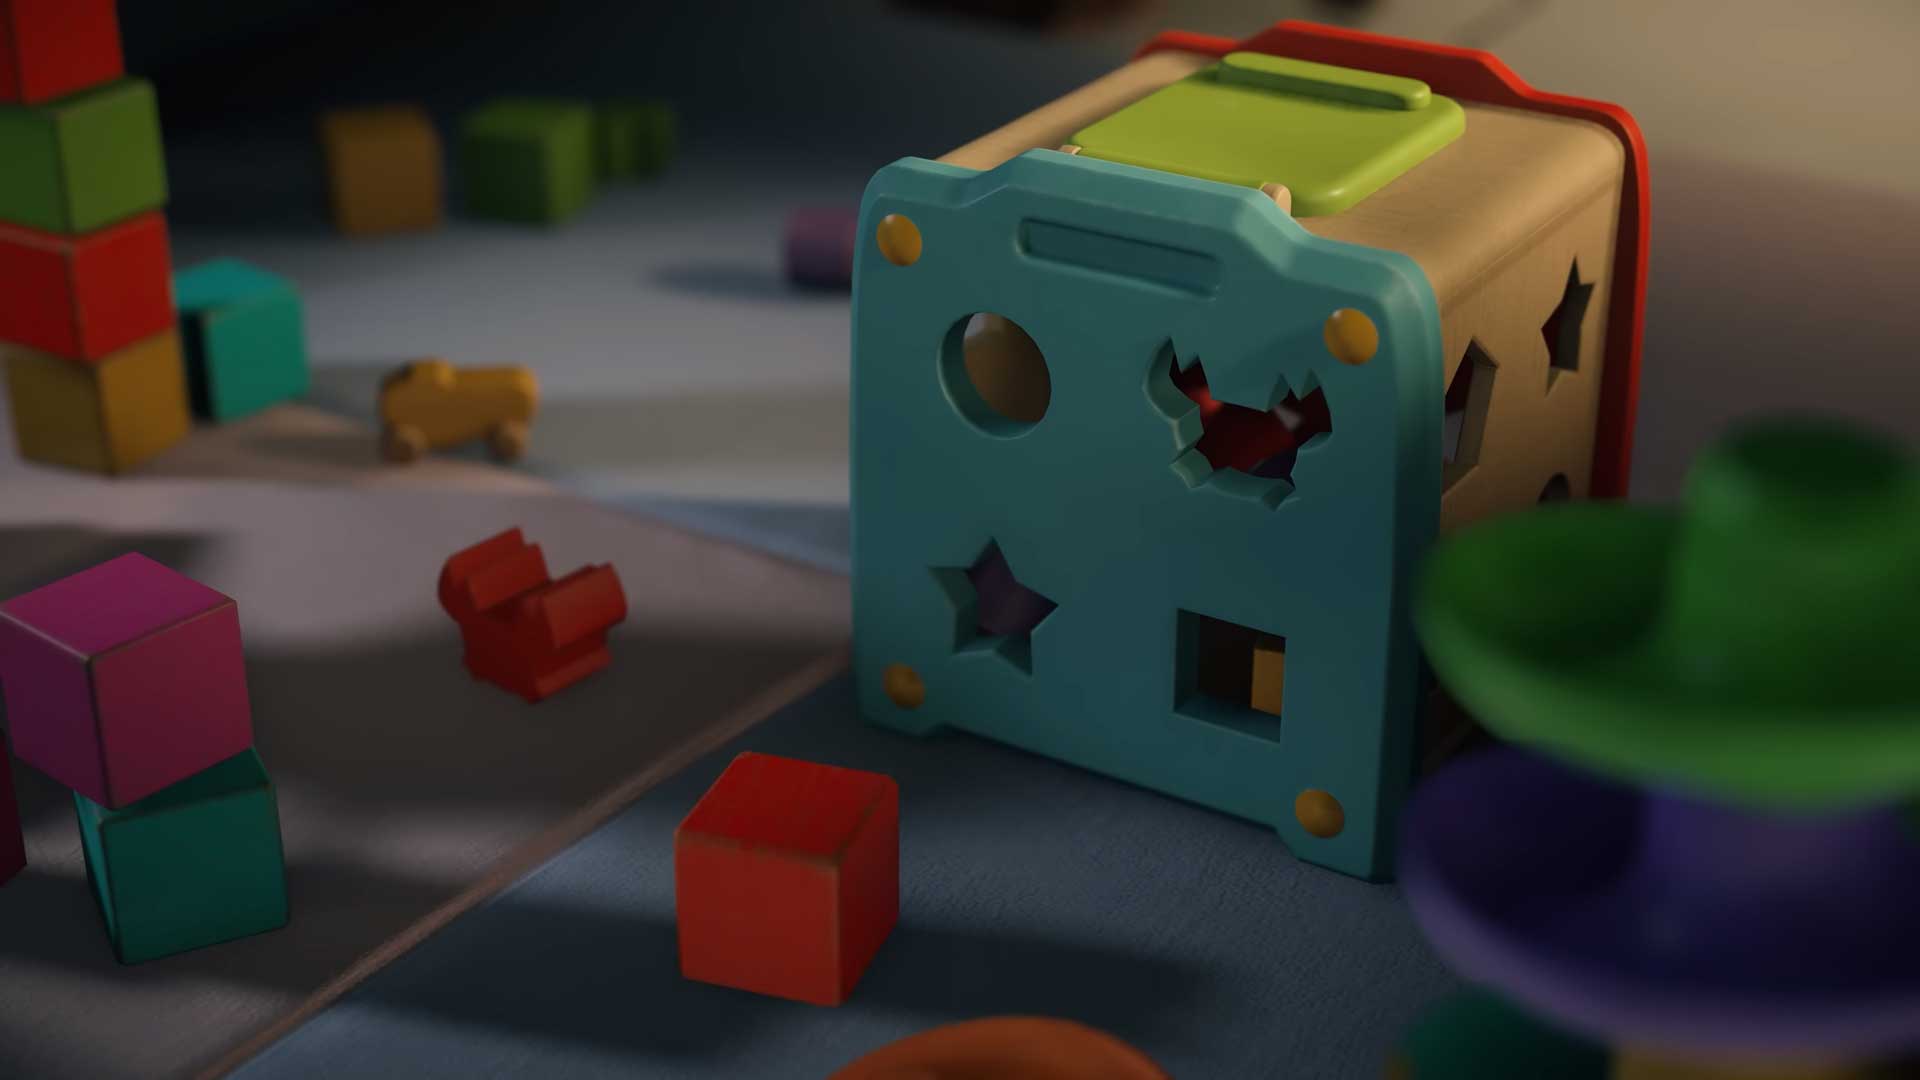 اسباب بازی های رنگارنگ و سایه یک بچه در تریلر بازی دث استرندینگ ۲